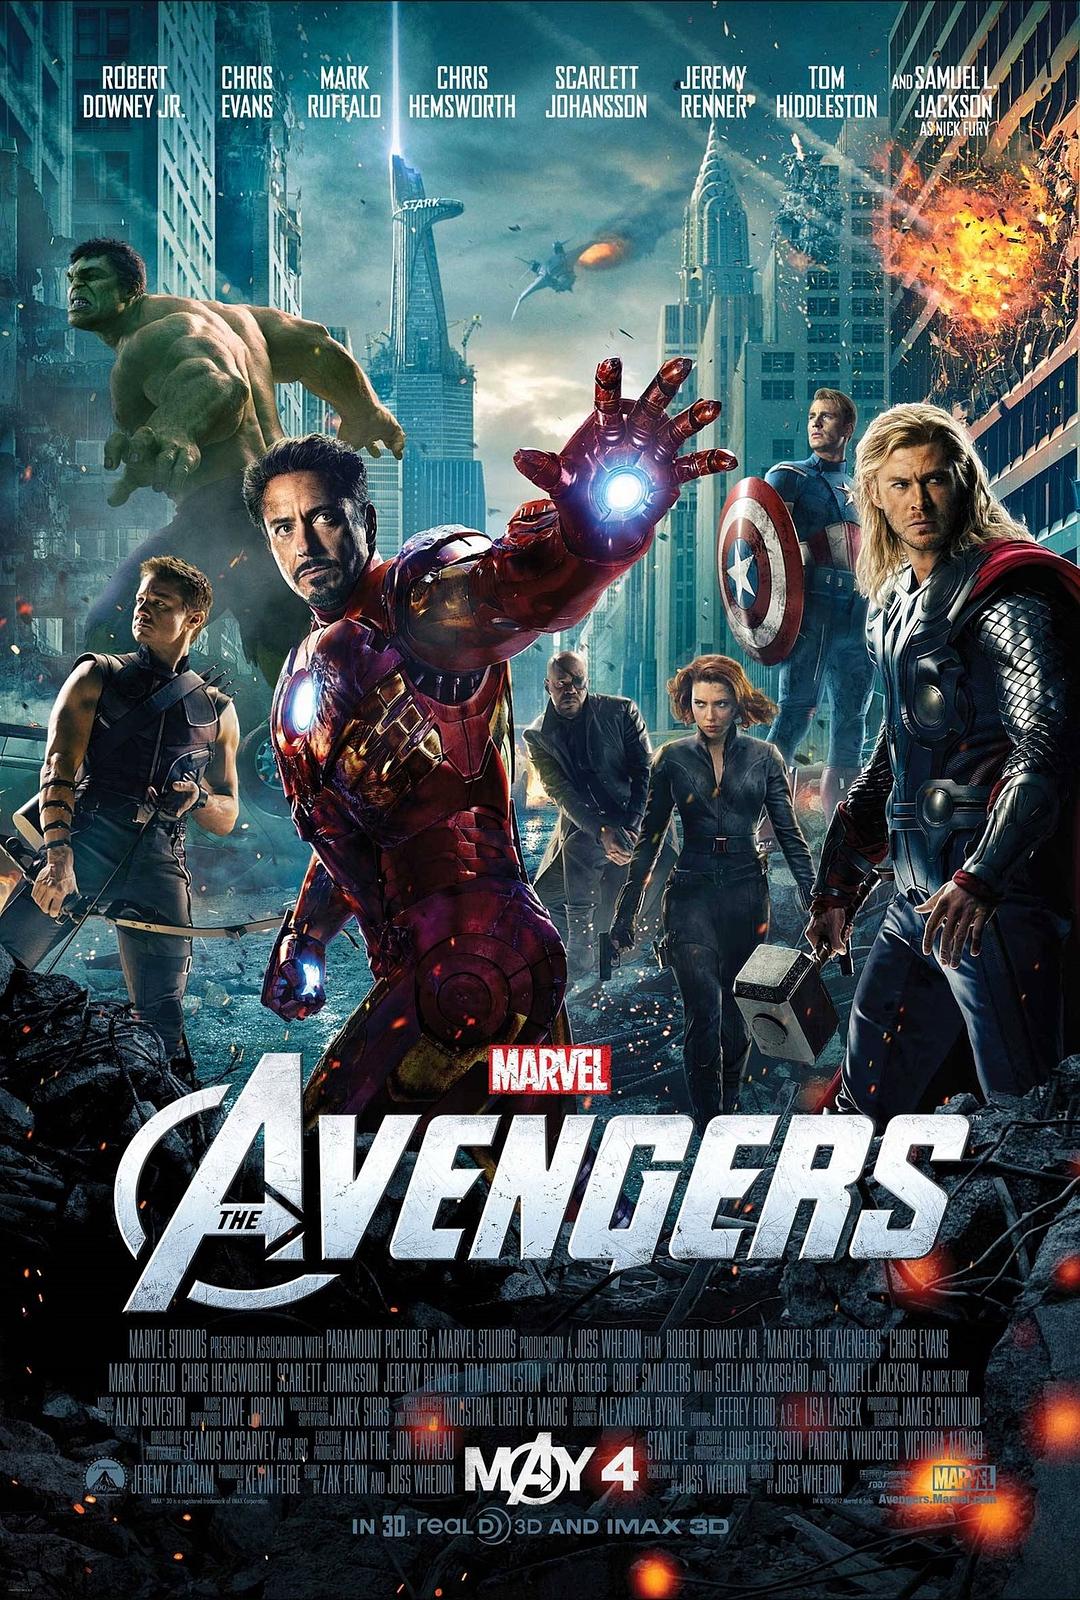 复仇者联盟.The.Avengers.2012.BD3D.1080p.BluRay.REMUX.AVC.DTS-HD.MA.7.1-Asmo 37.74GB